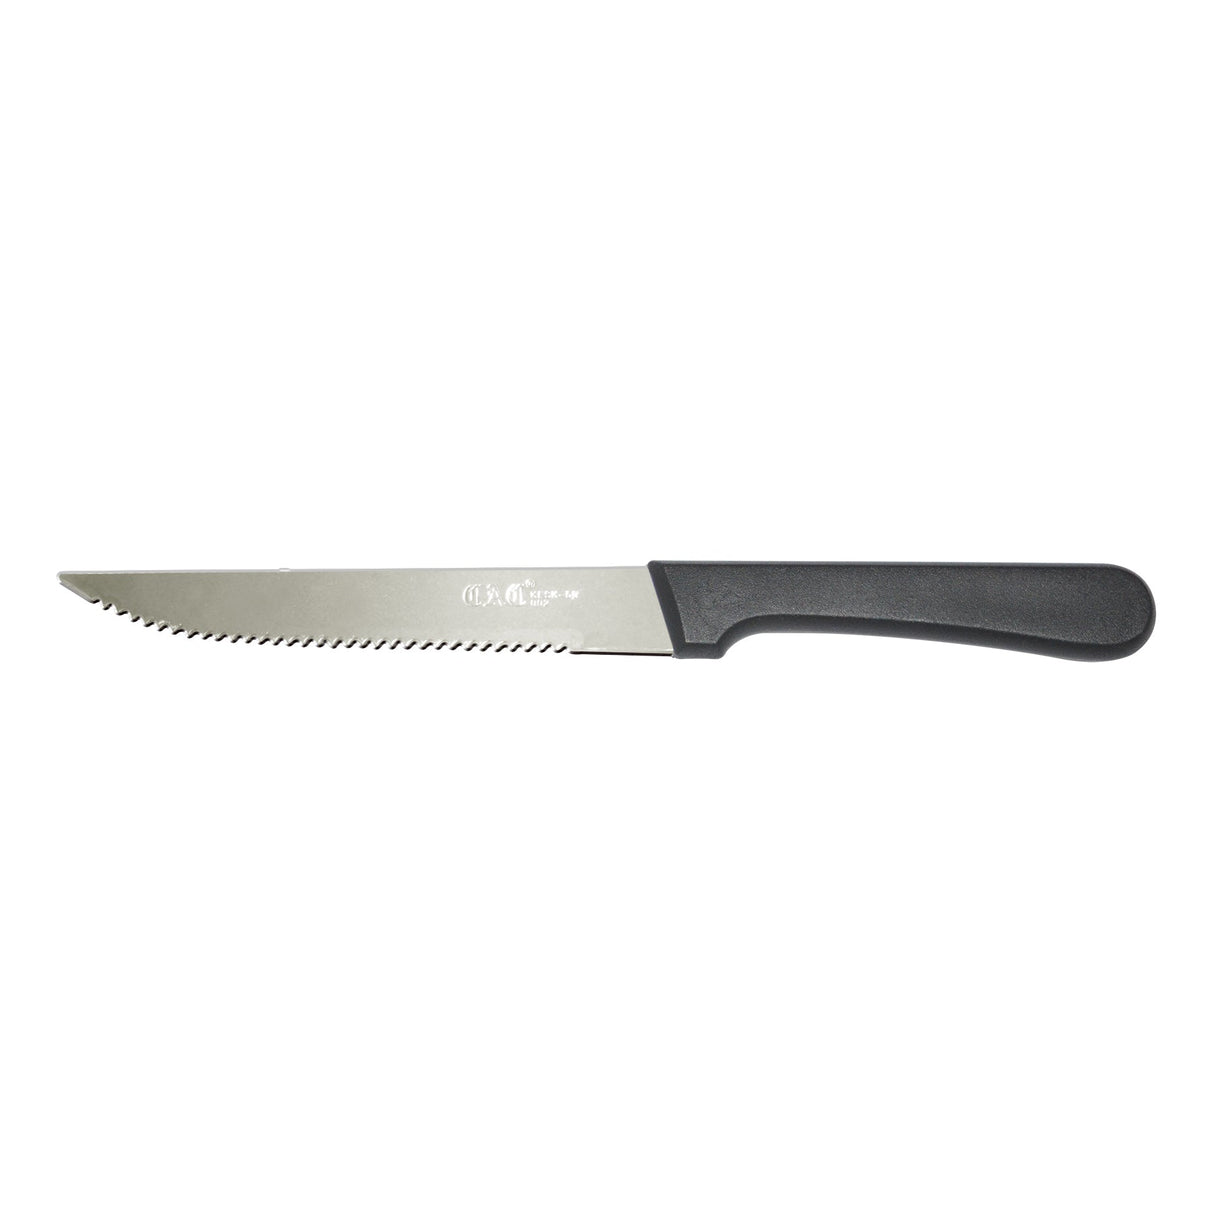 Knife Steak Pointed Tip Plastic Hdl 5"